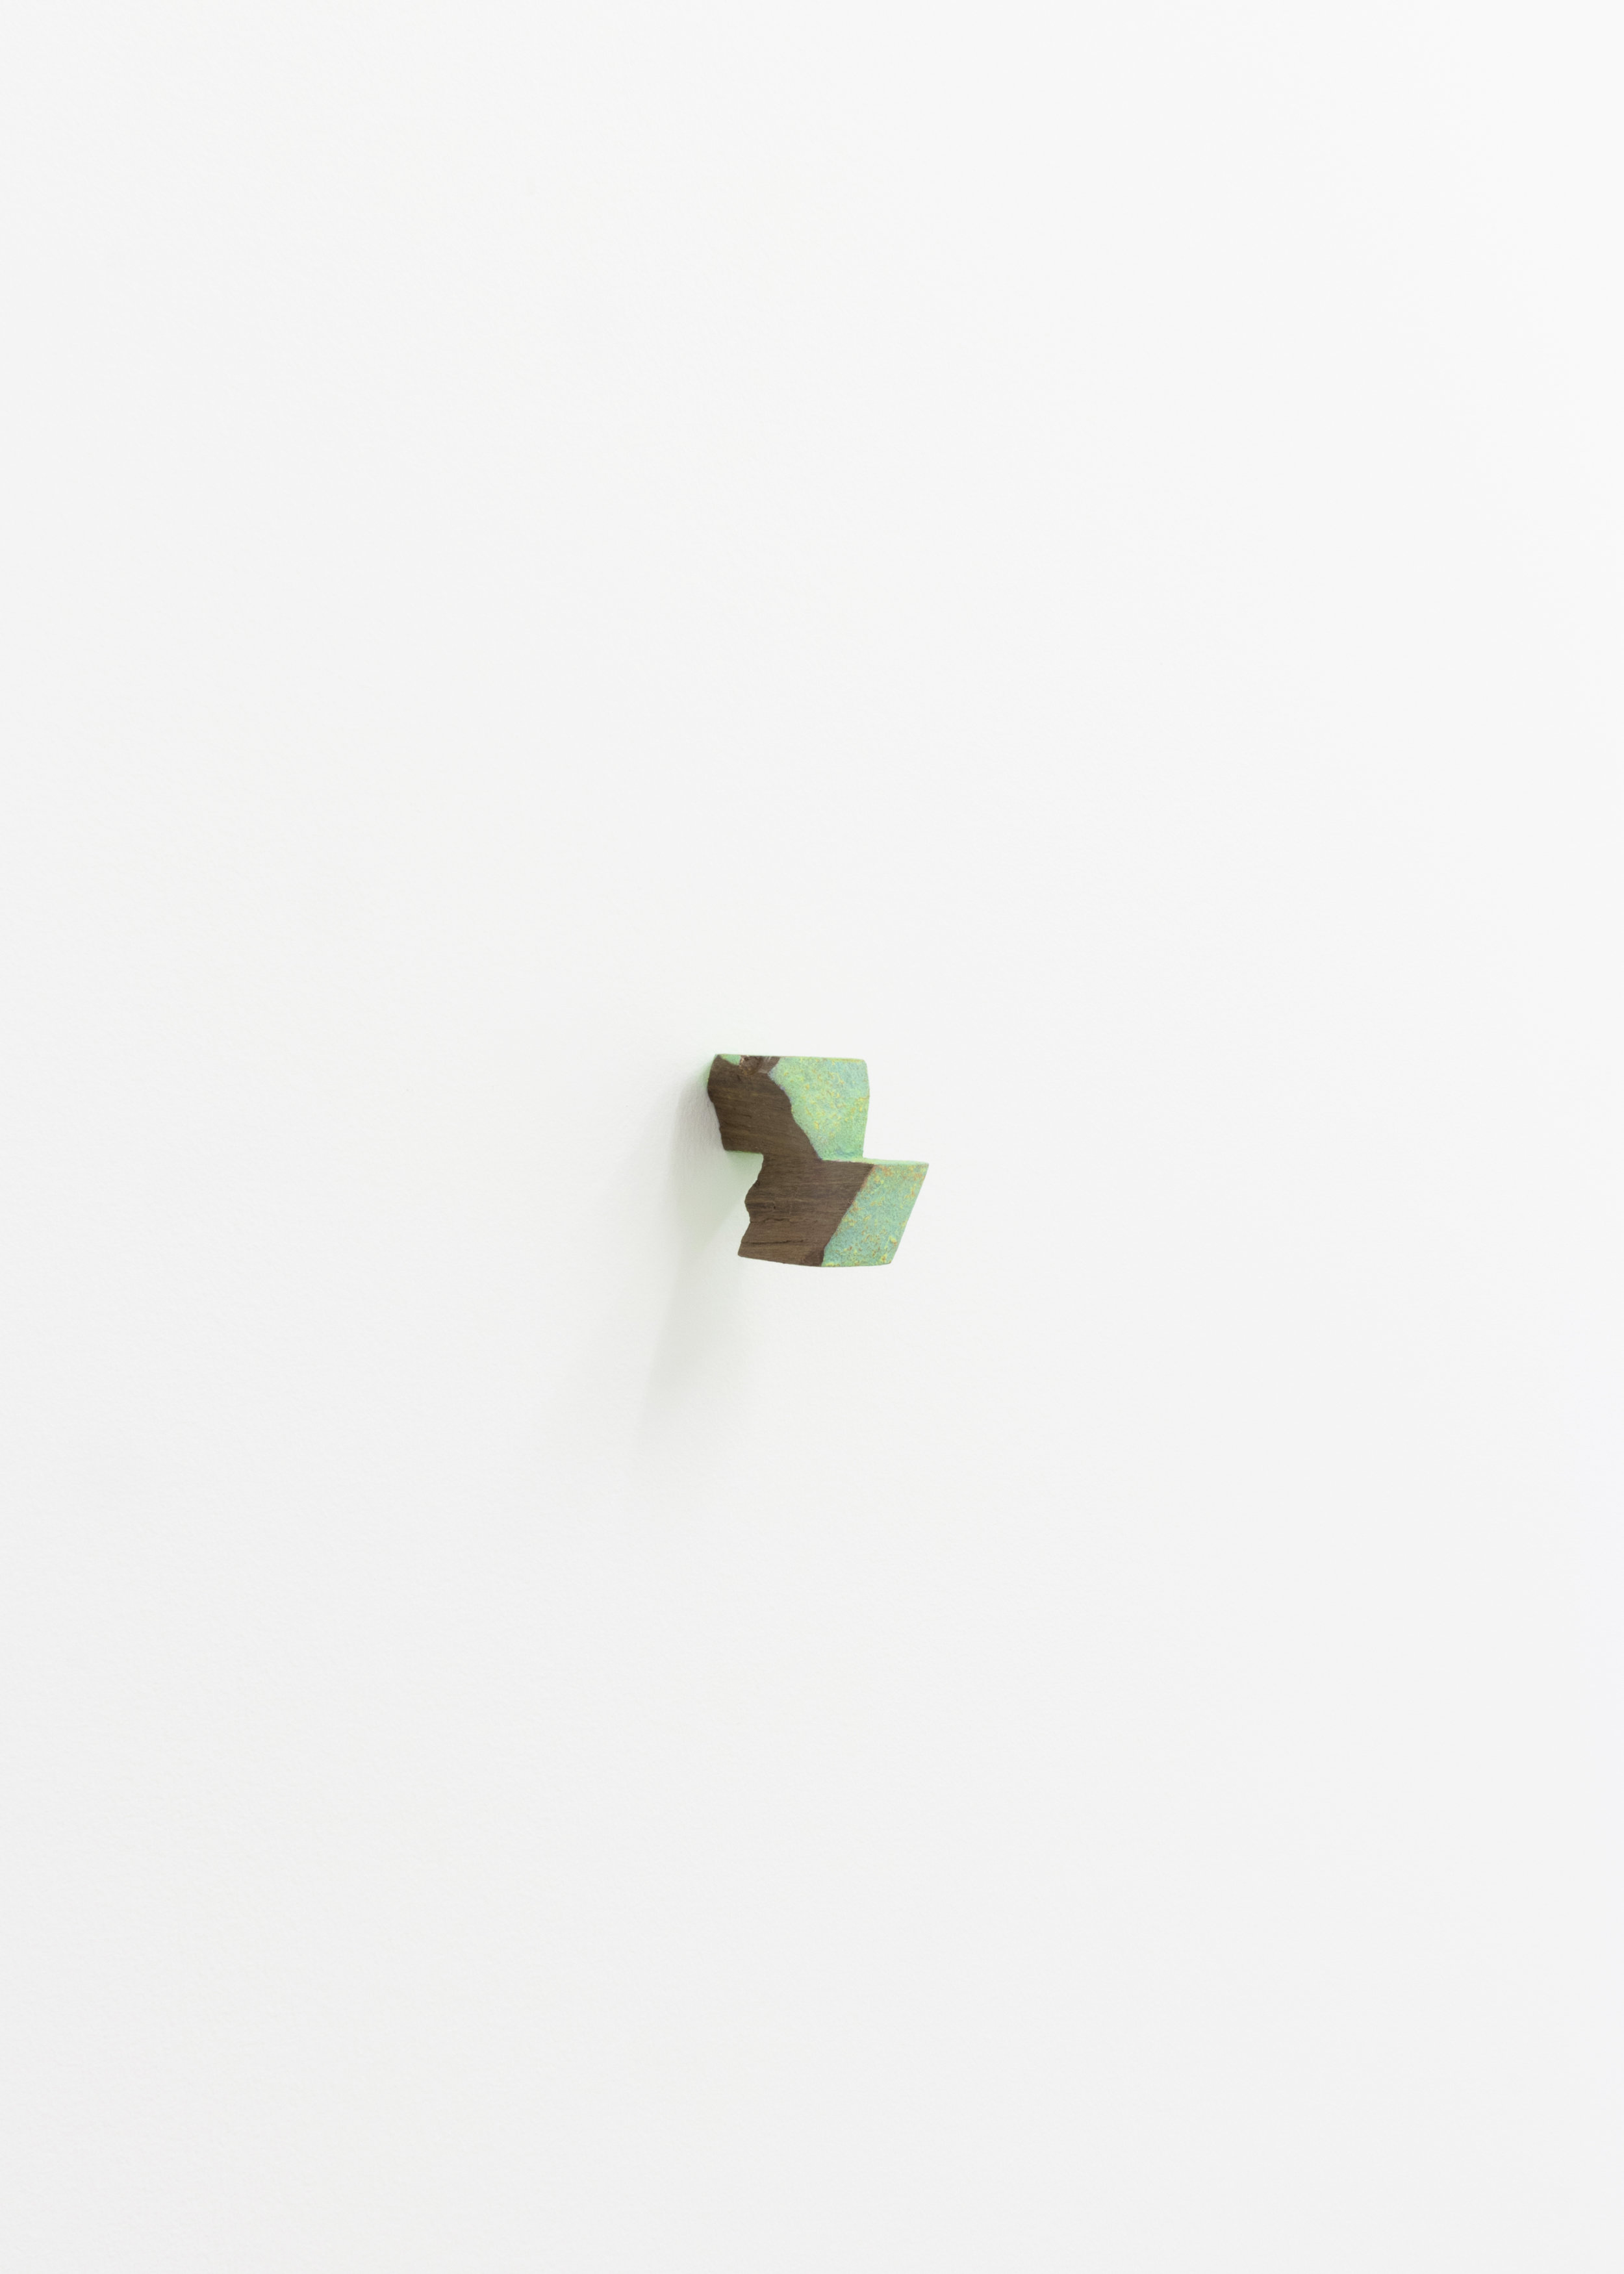  Zach Meisner, Untitled, 2018, acrylic on walnut, 4 x 3 x 4 in. 